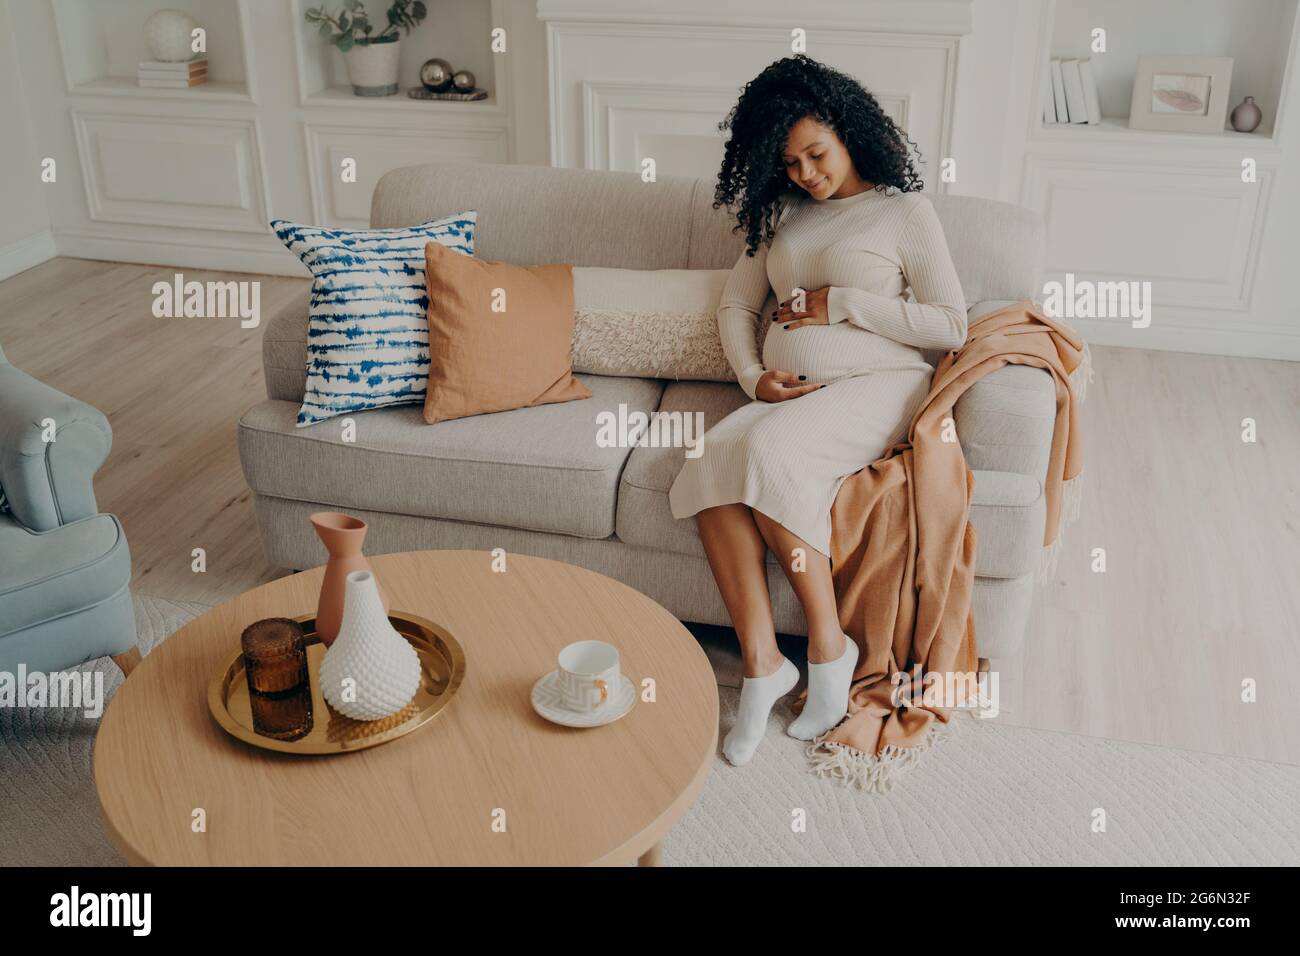 Belle photo afro-américaine dame assise sur un canapé confortable et s'attendant à bébé, regardant sur son ventre Banque D'Images